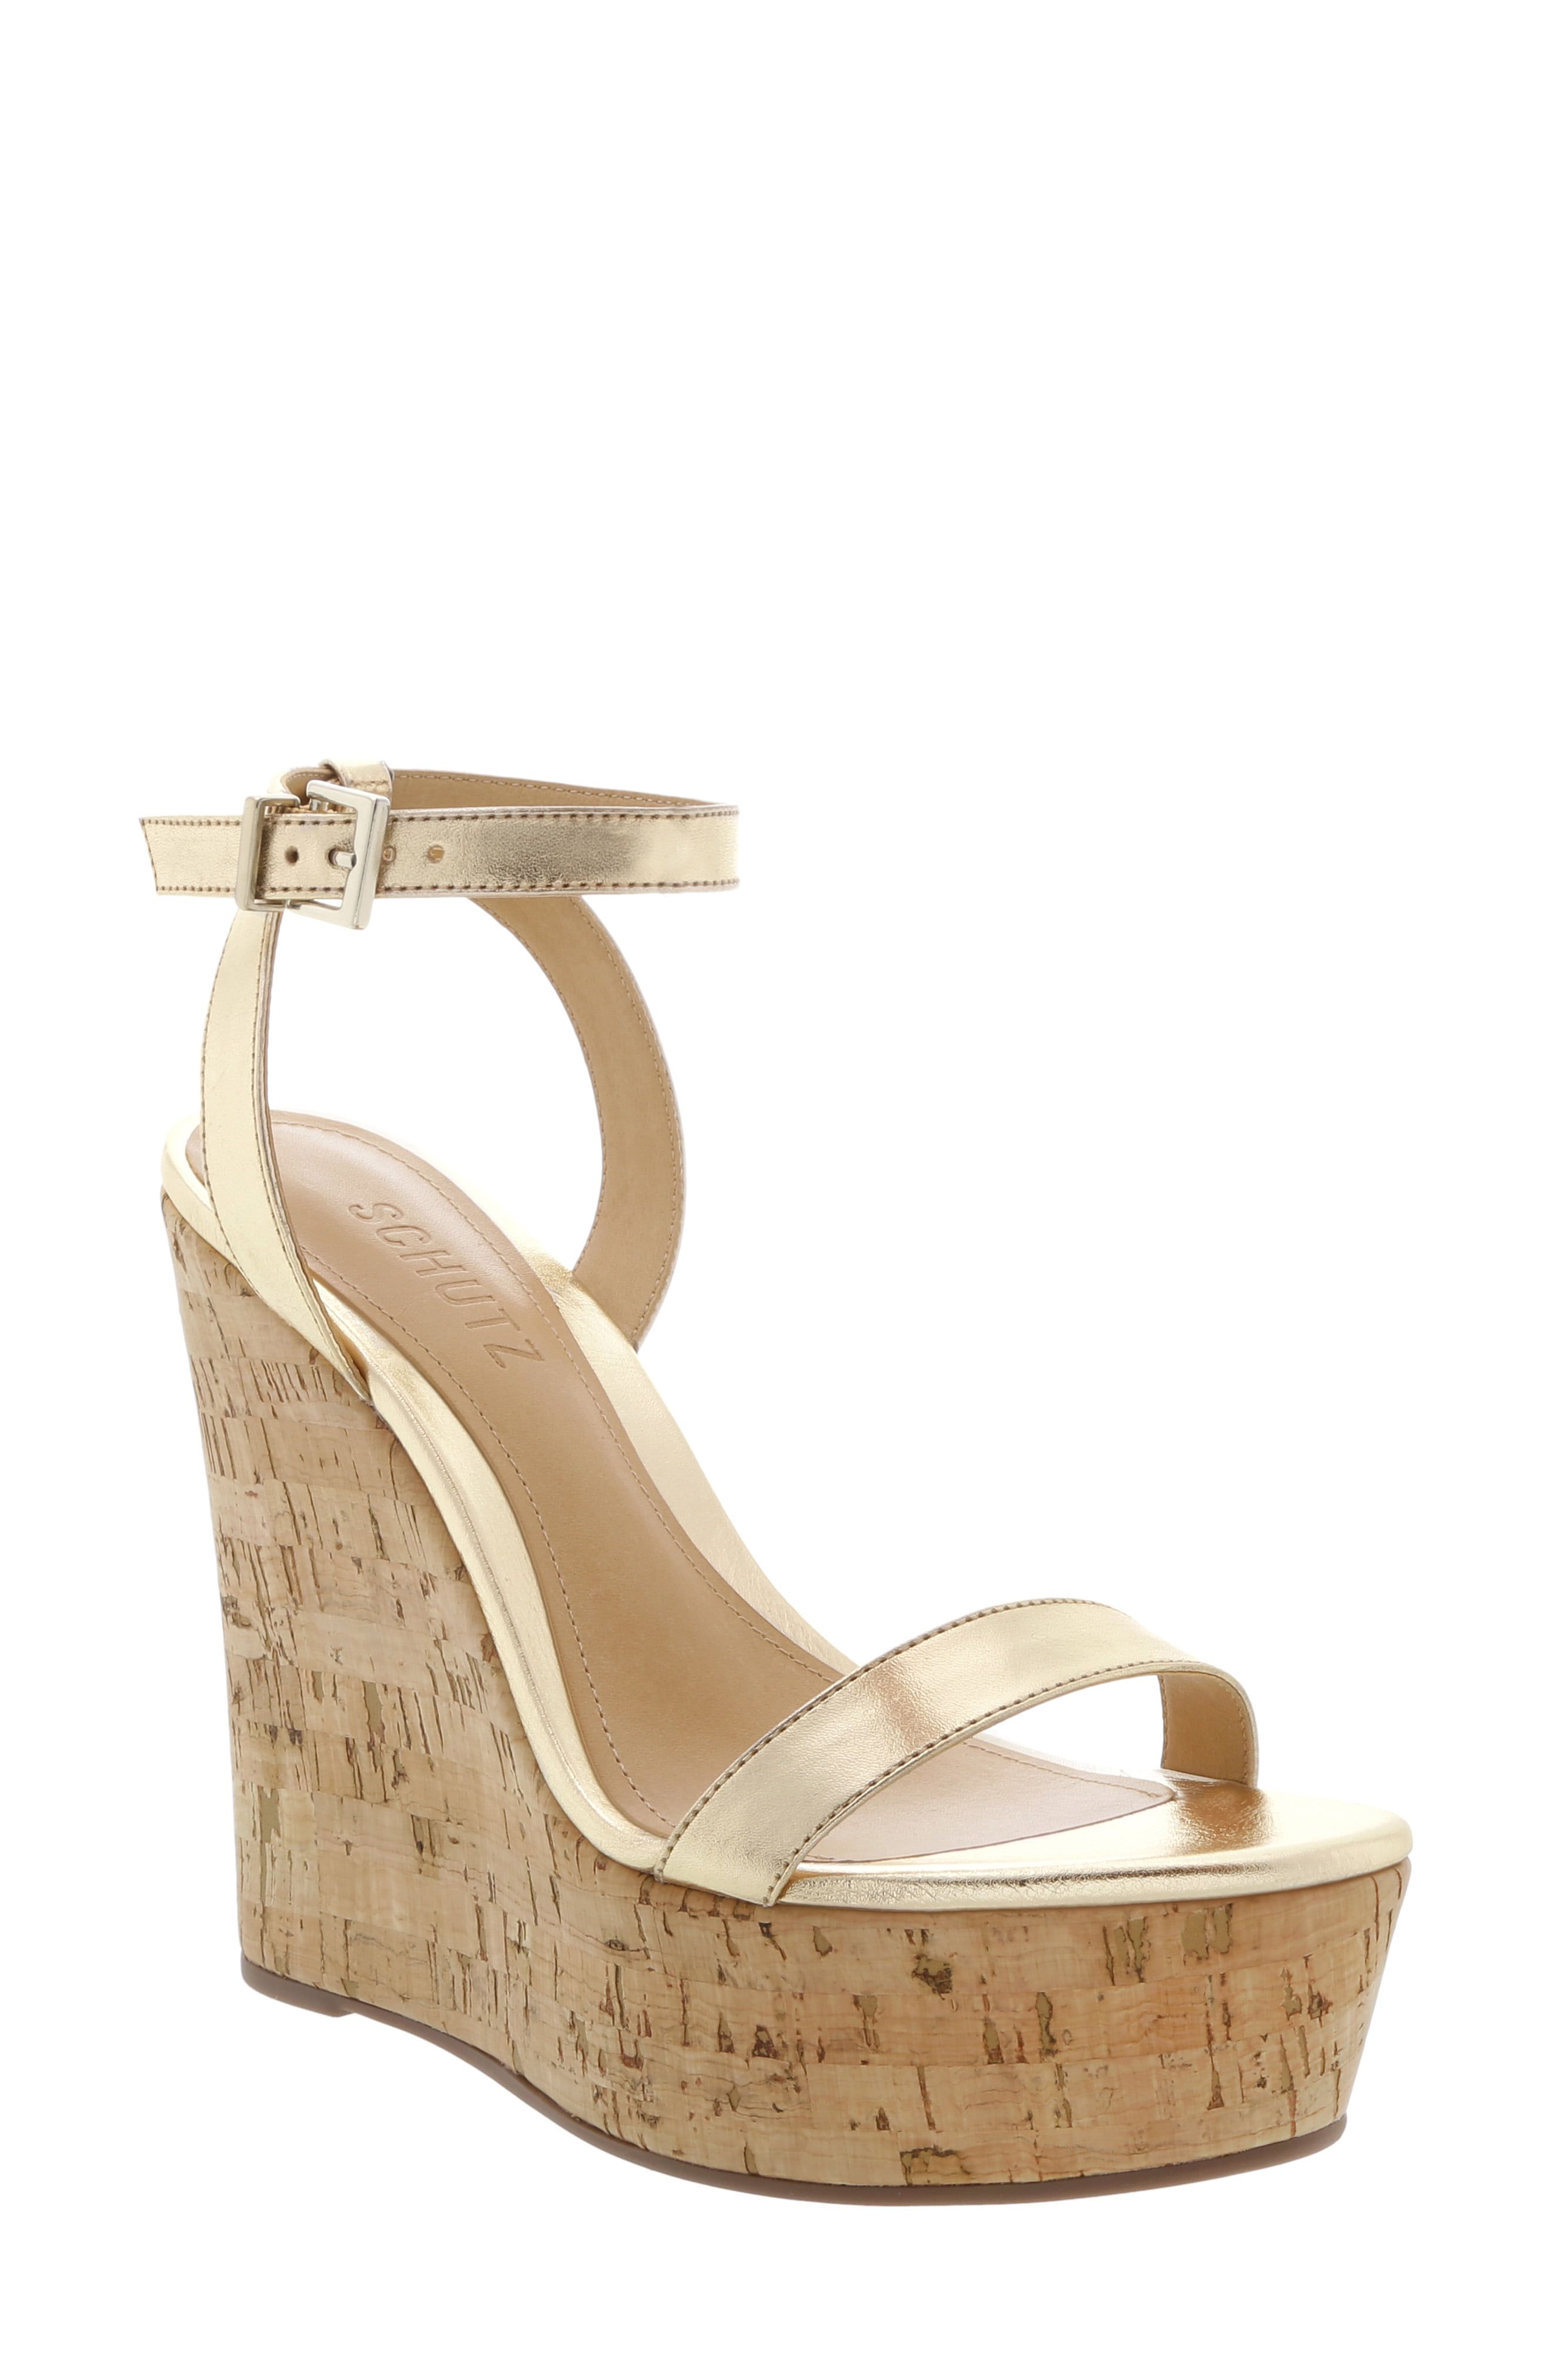 Shoes High-Heeled Sandals Platform High-Heeled Sandals About You Platform High-Heeled Sandal gold-colored elegant 